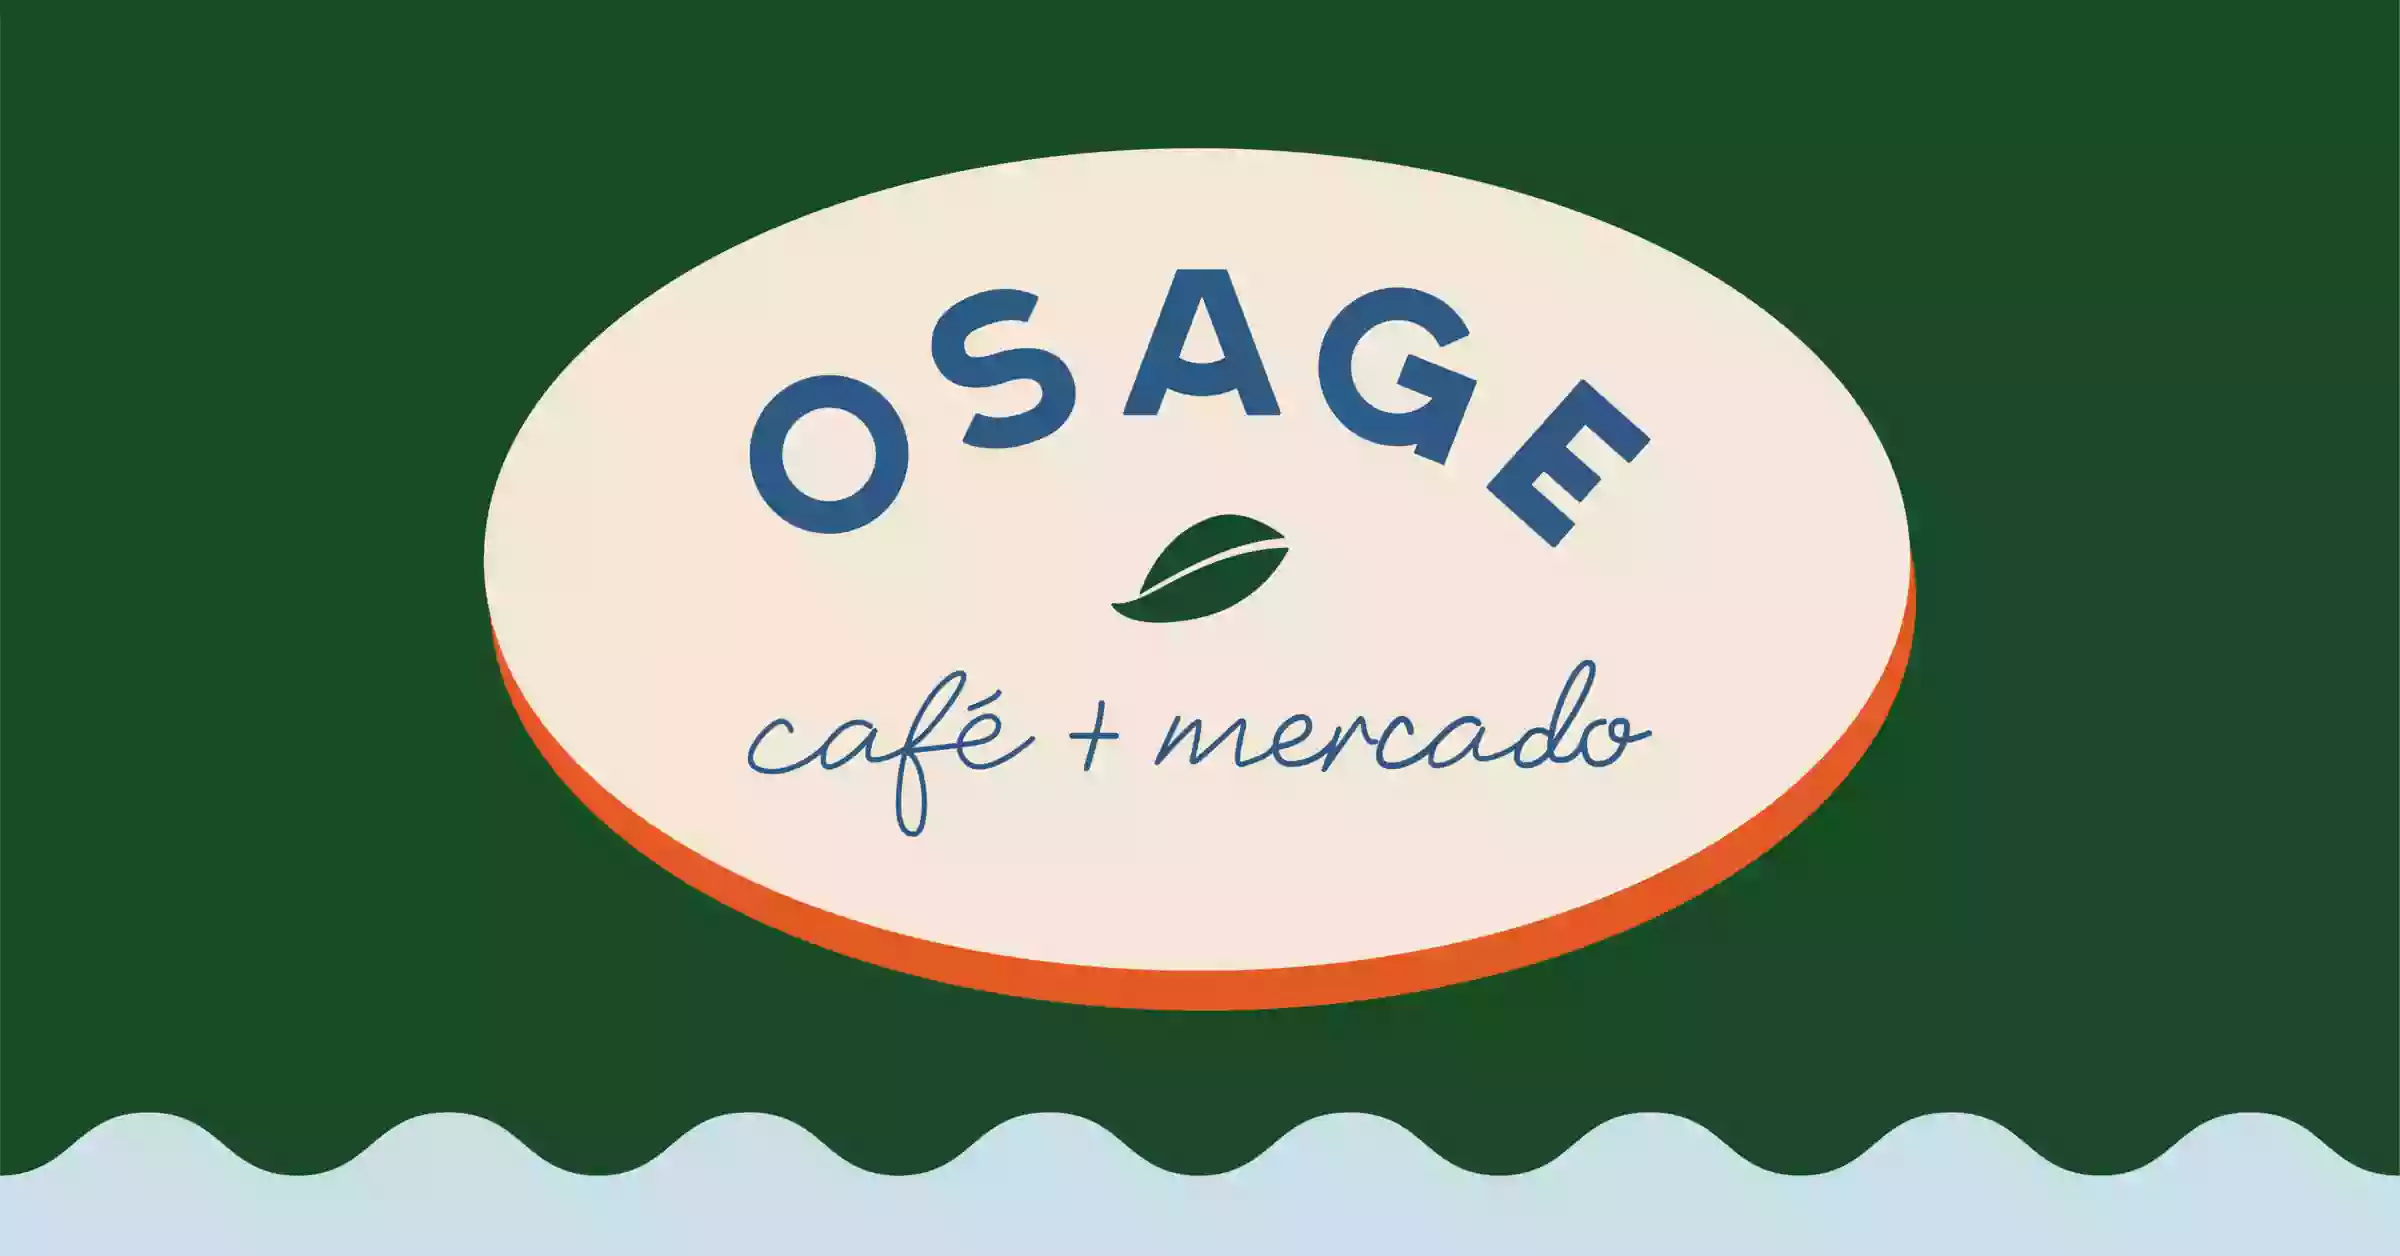 The Osage Café & Mercado